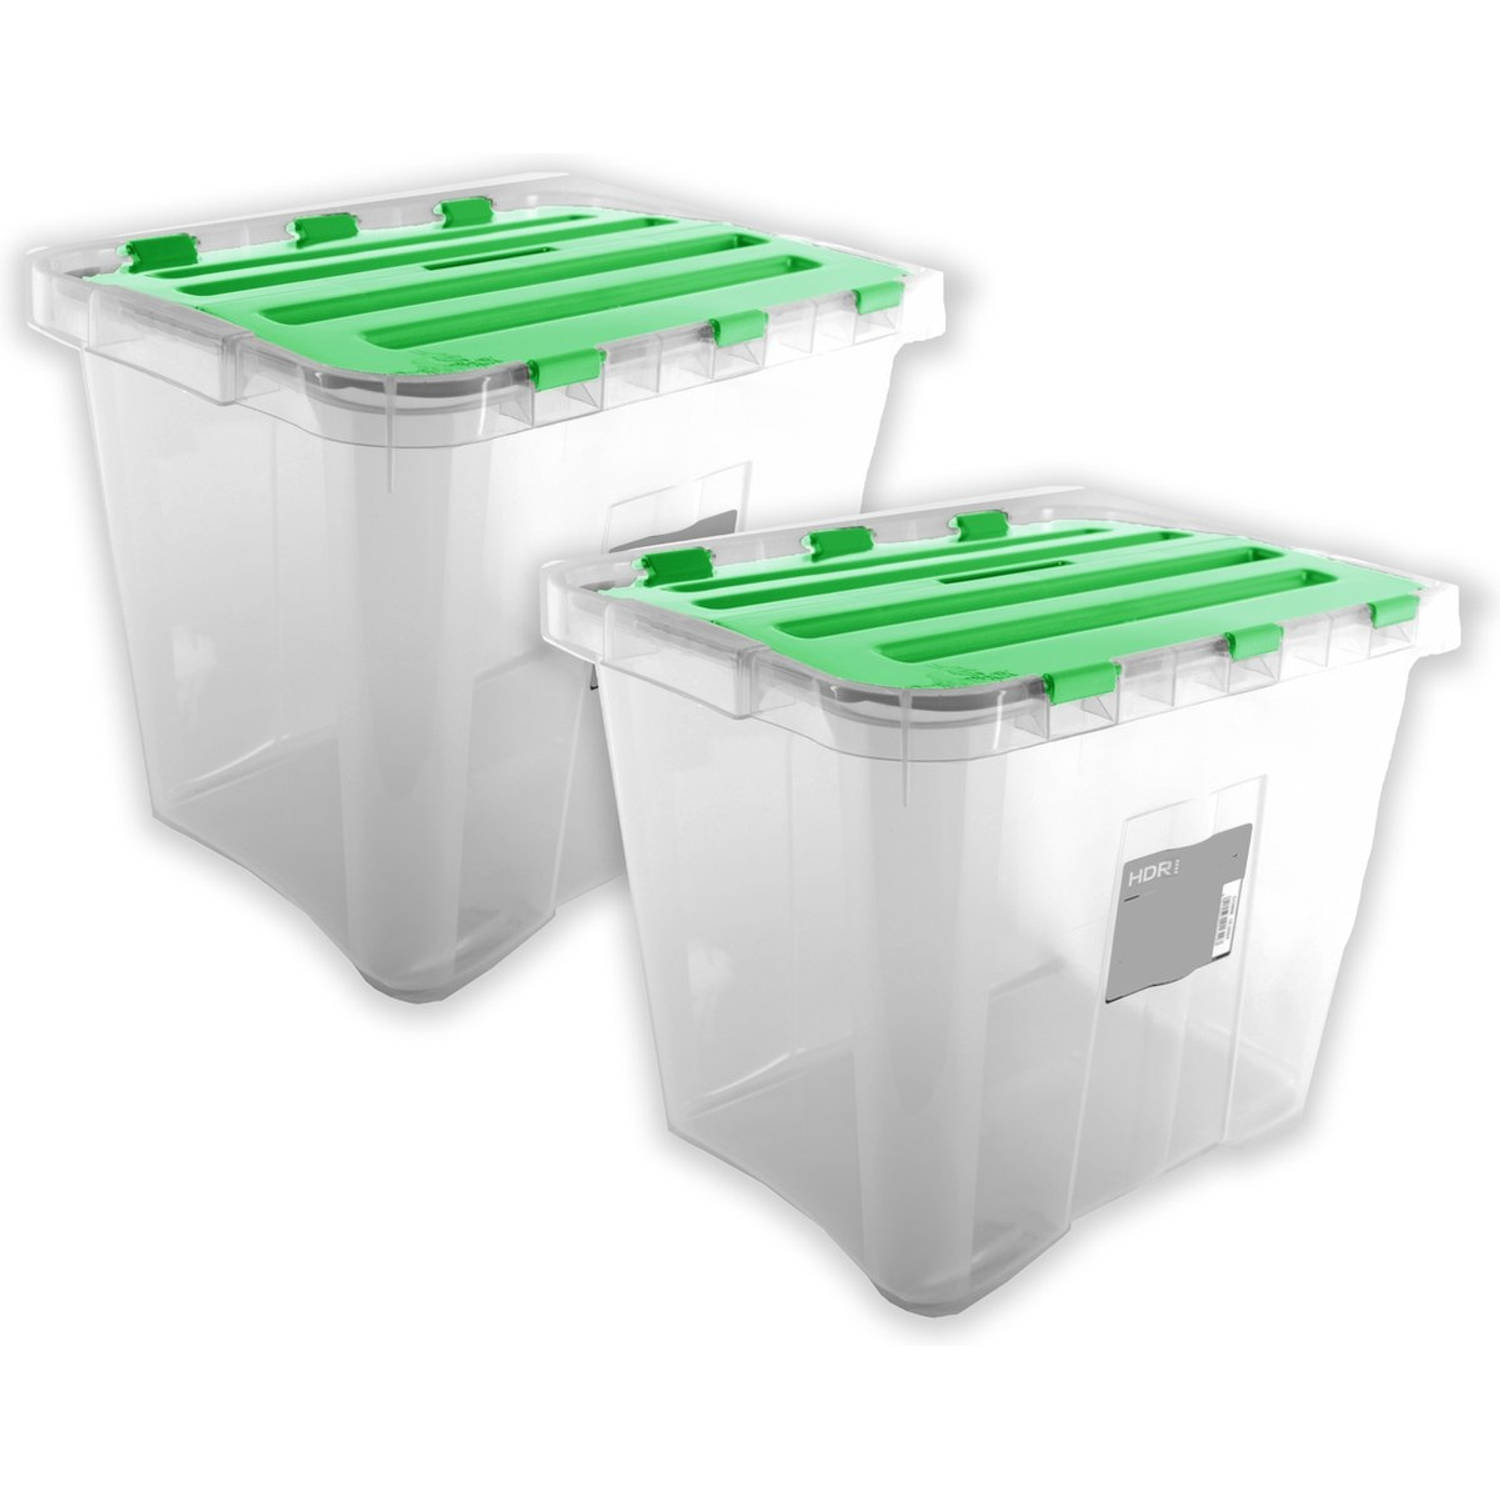 Zakje Sport spelen Opbergbox 24 liter 2 stuks in de verpakking Groen - formaat 29.5 x 39 x 30  cm - Opbergdoos - Opbergkist | Blokker